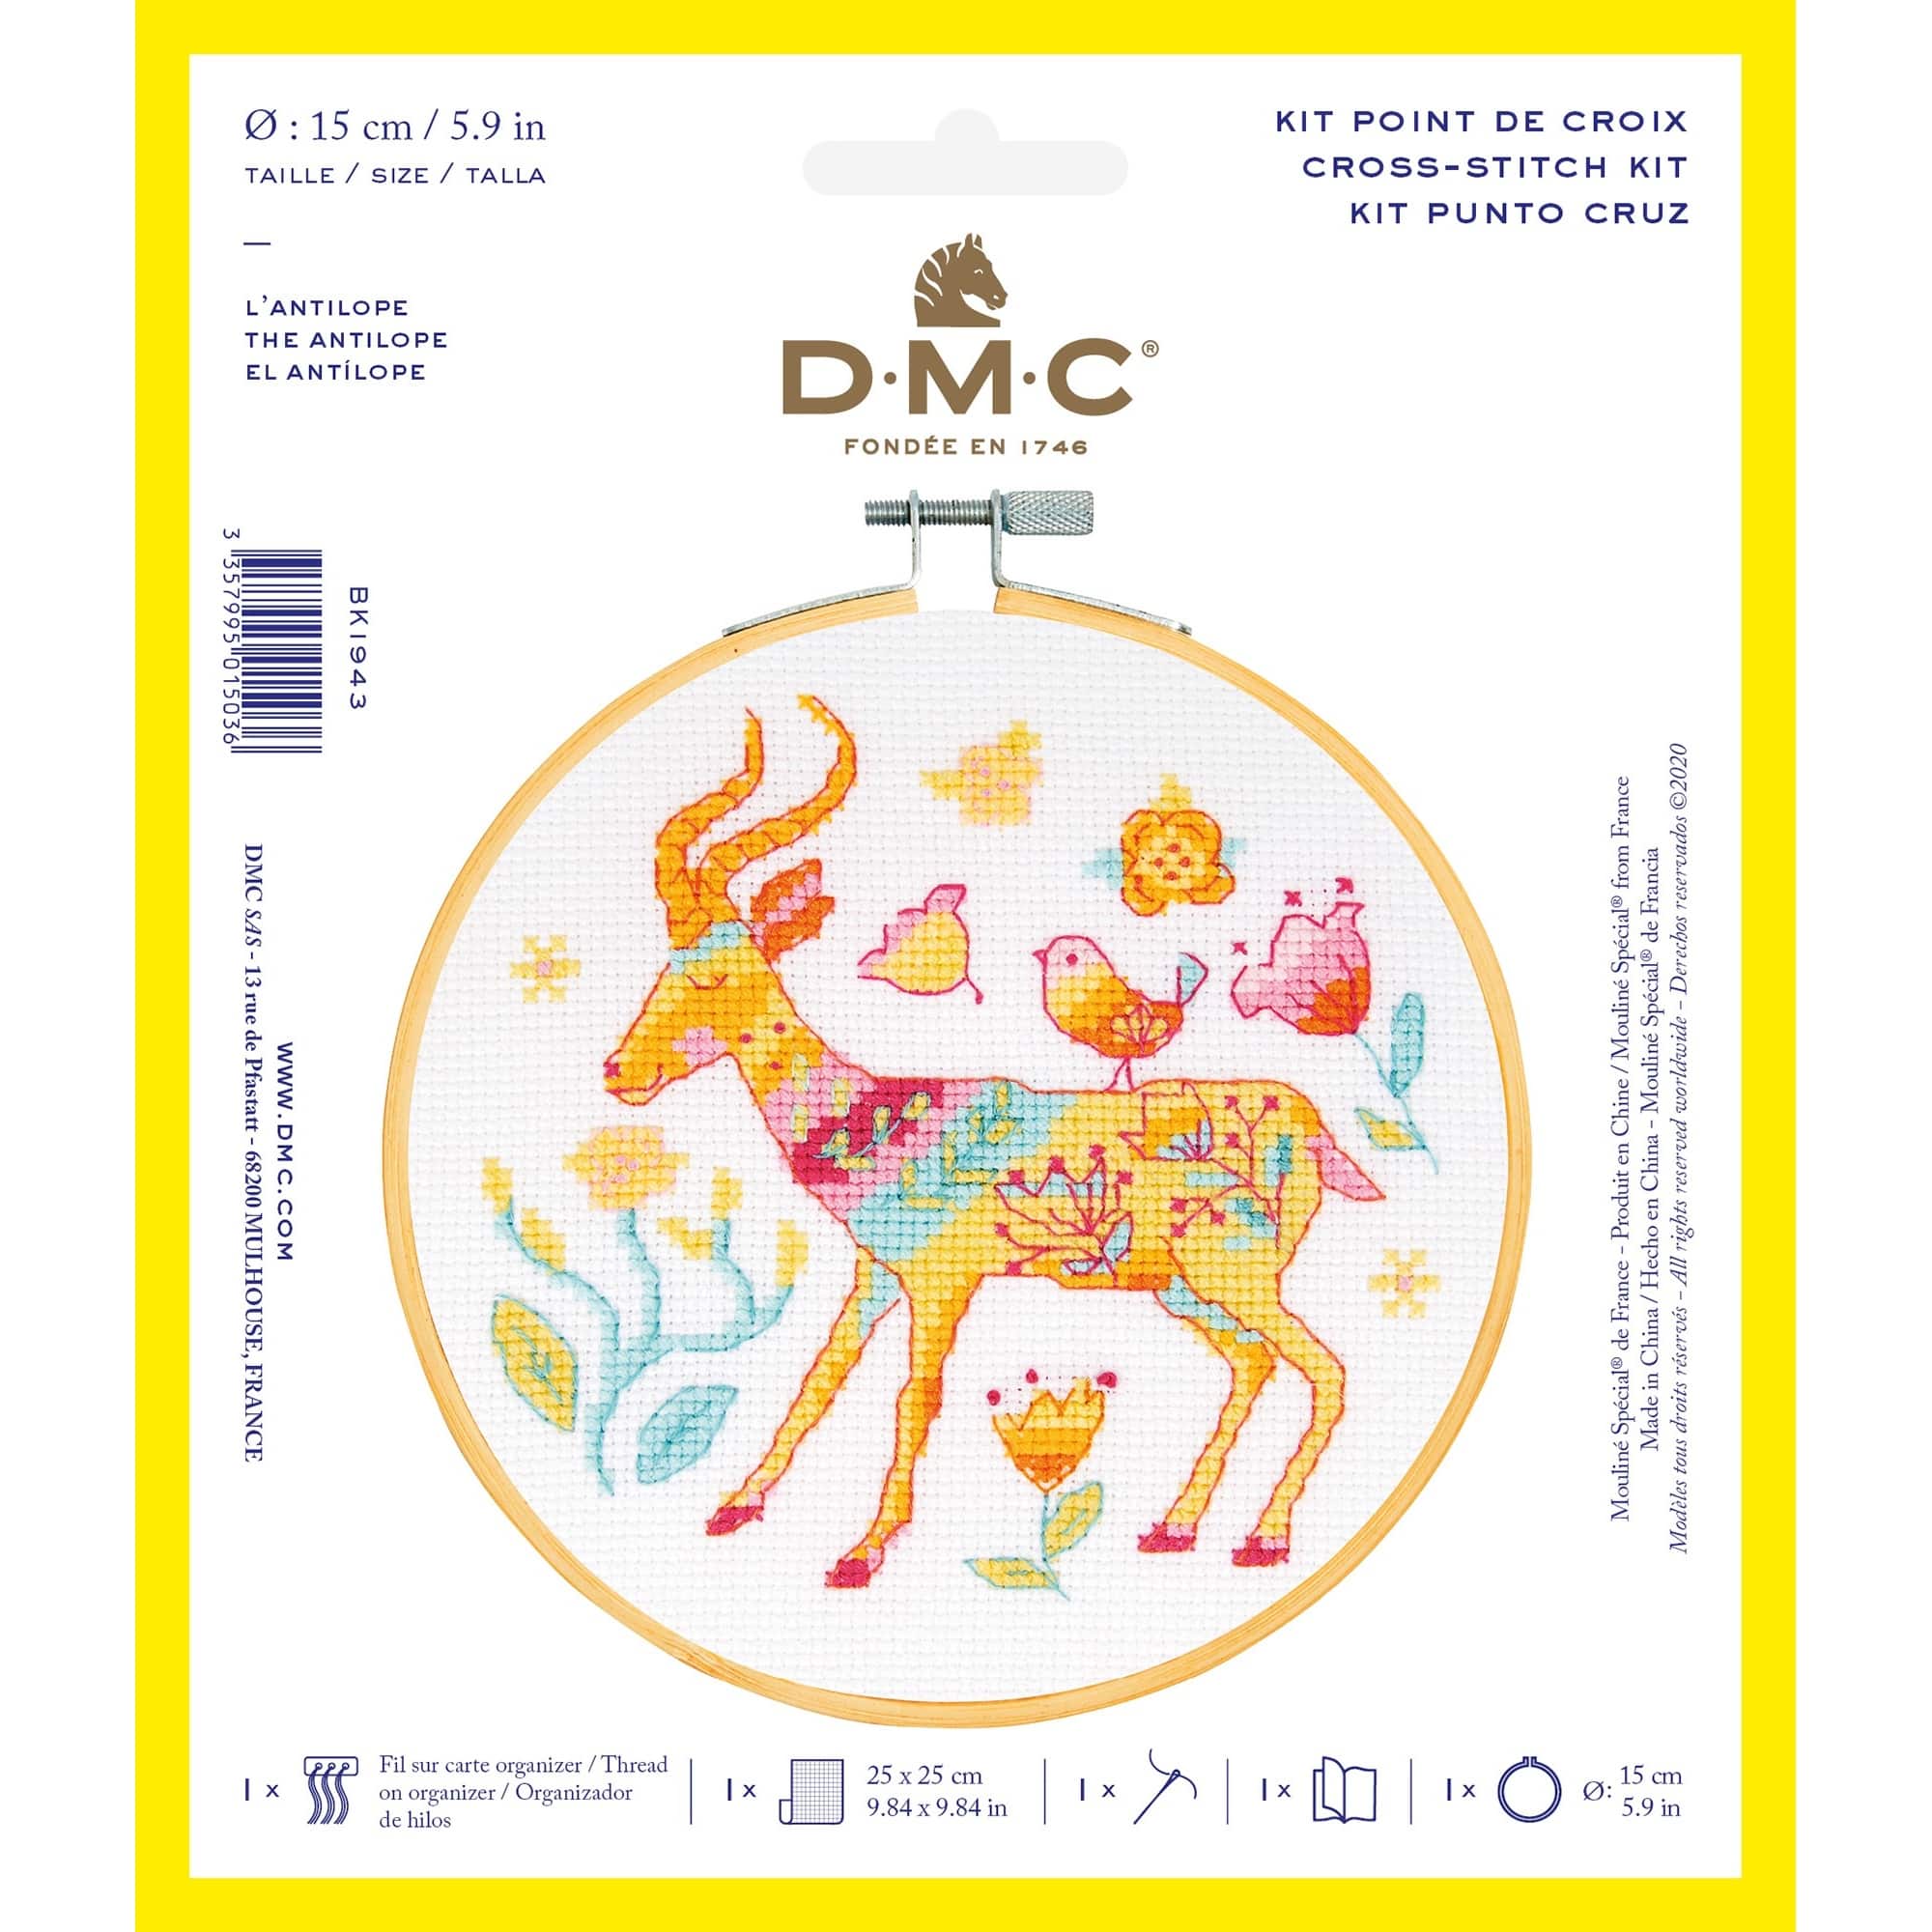 Cross Stitch Kits - DMC